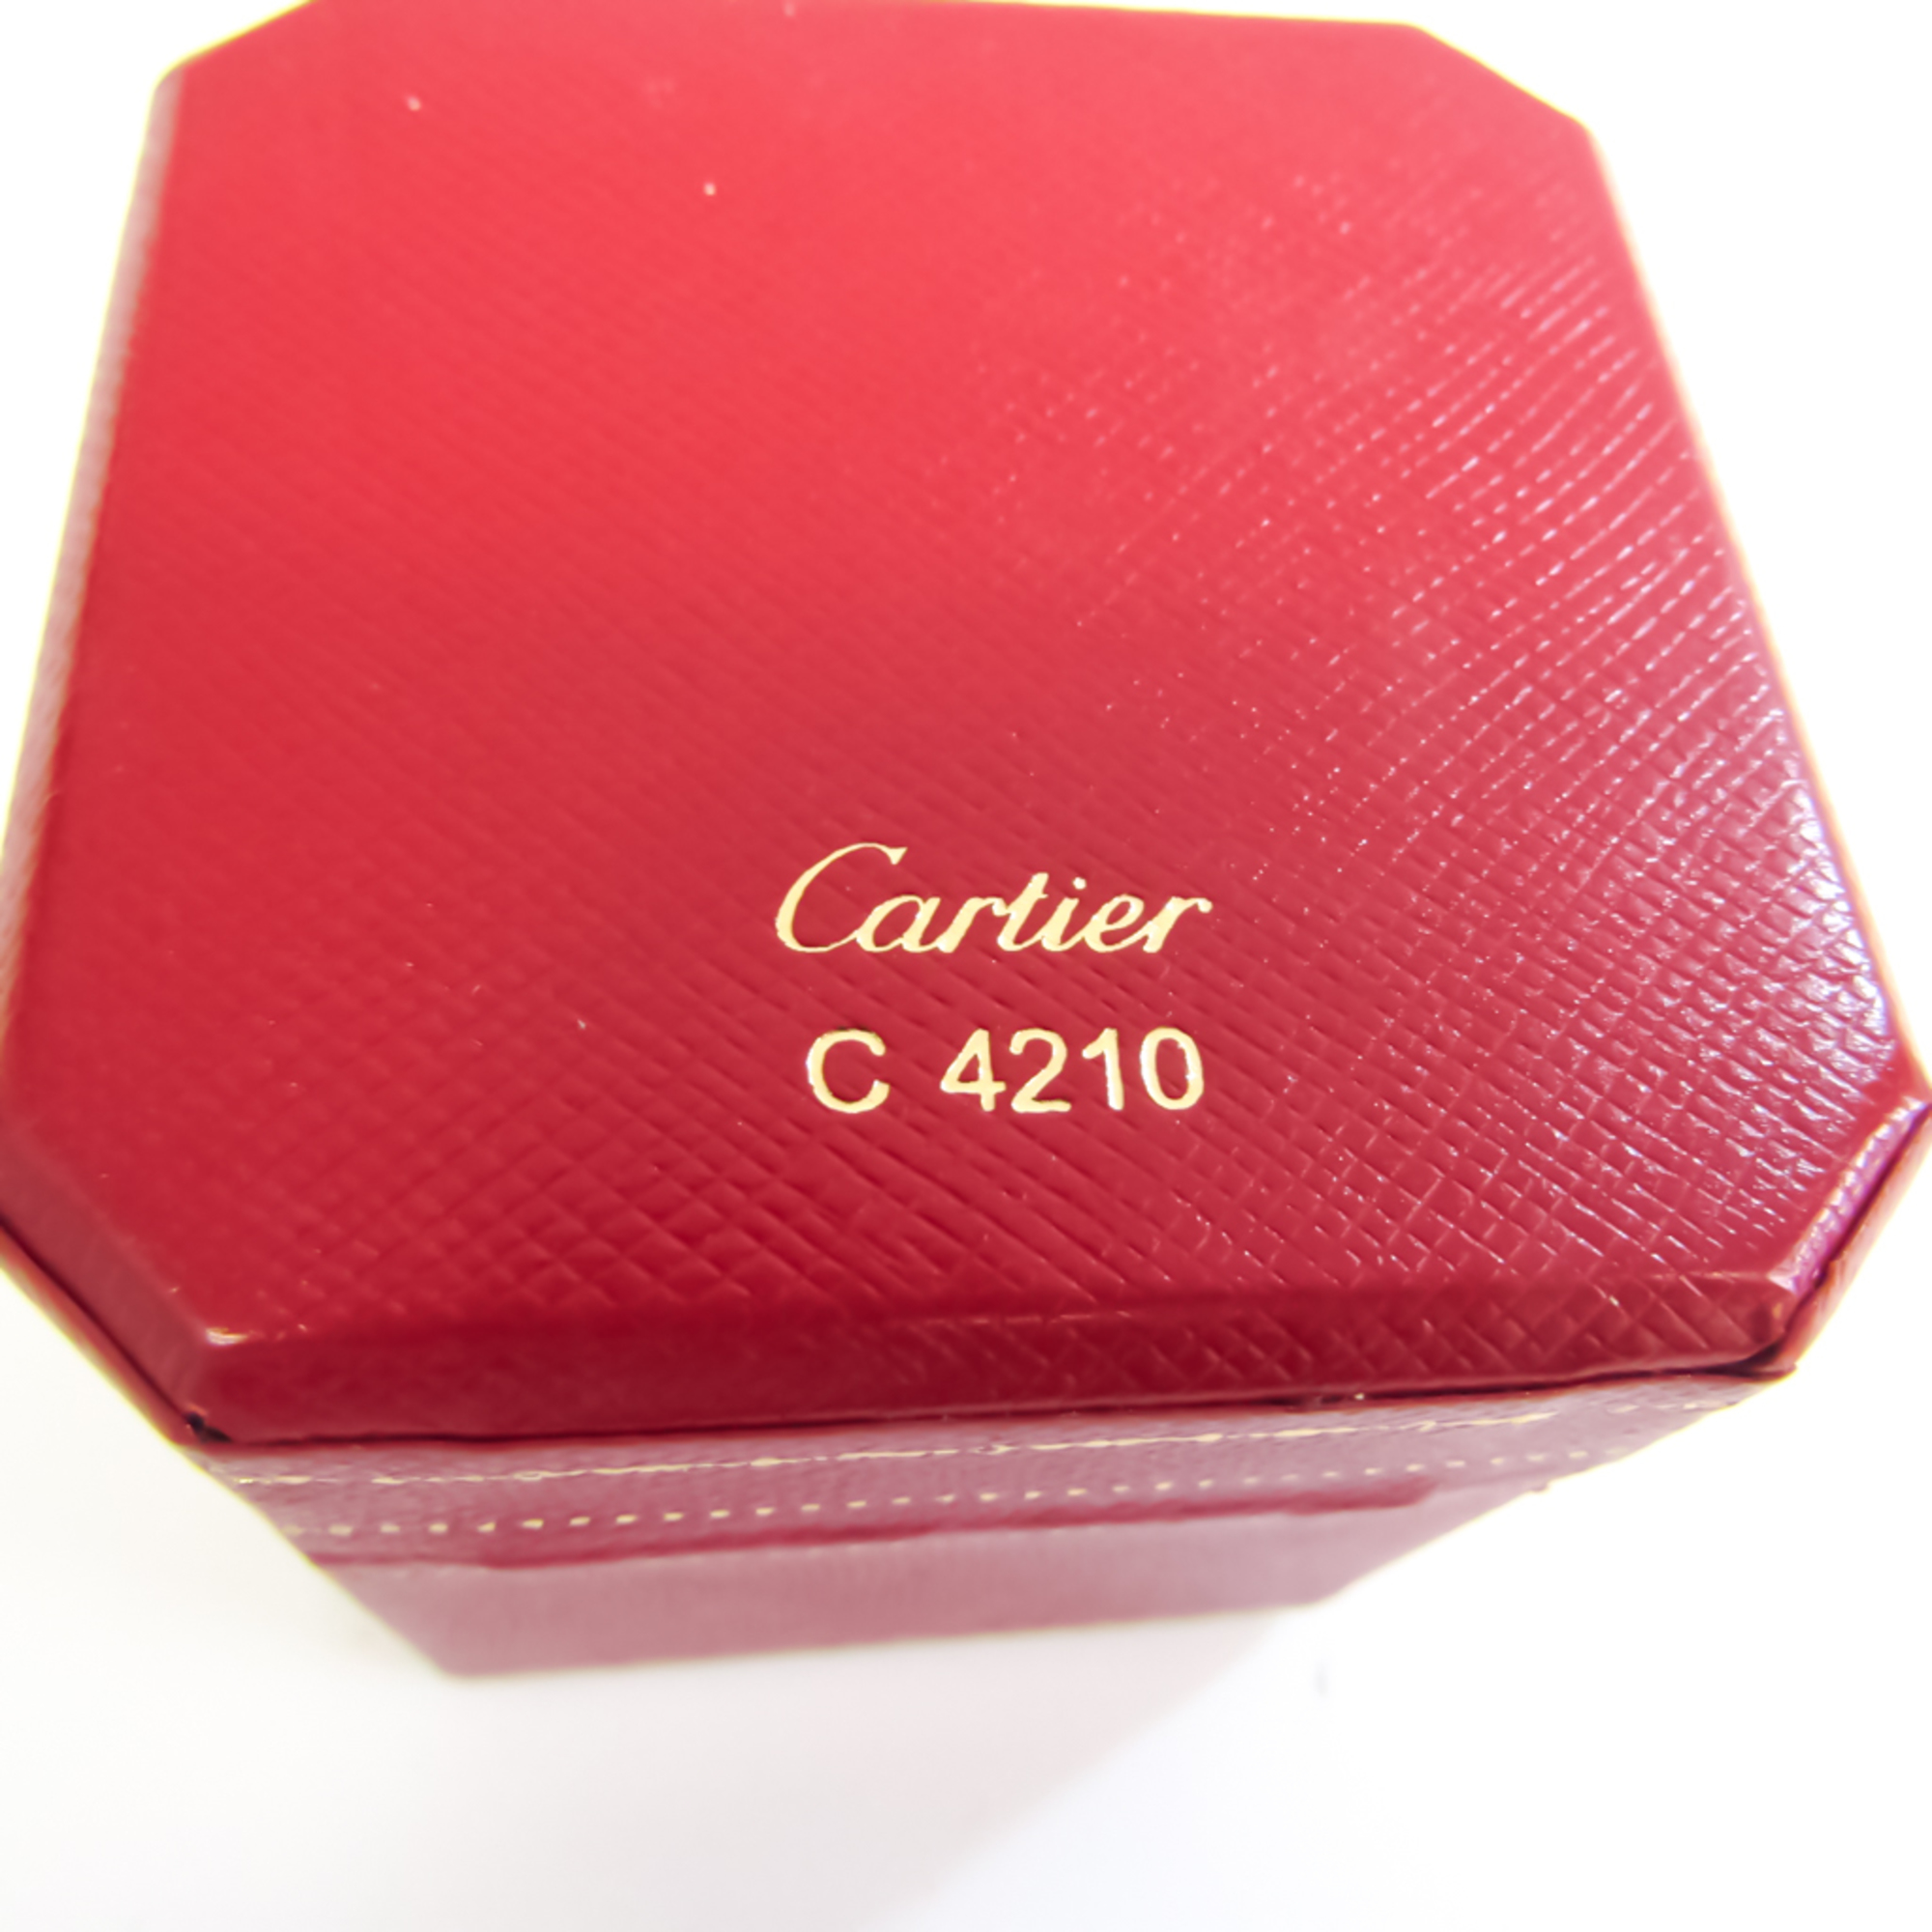 カルティエ(Cartier) ラブ フルダイヤモンドリング 150周年記念限定 K18ピンクゴールド(K18PG) ダイヤモンド バンドリング